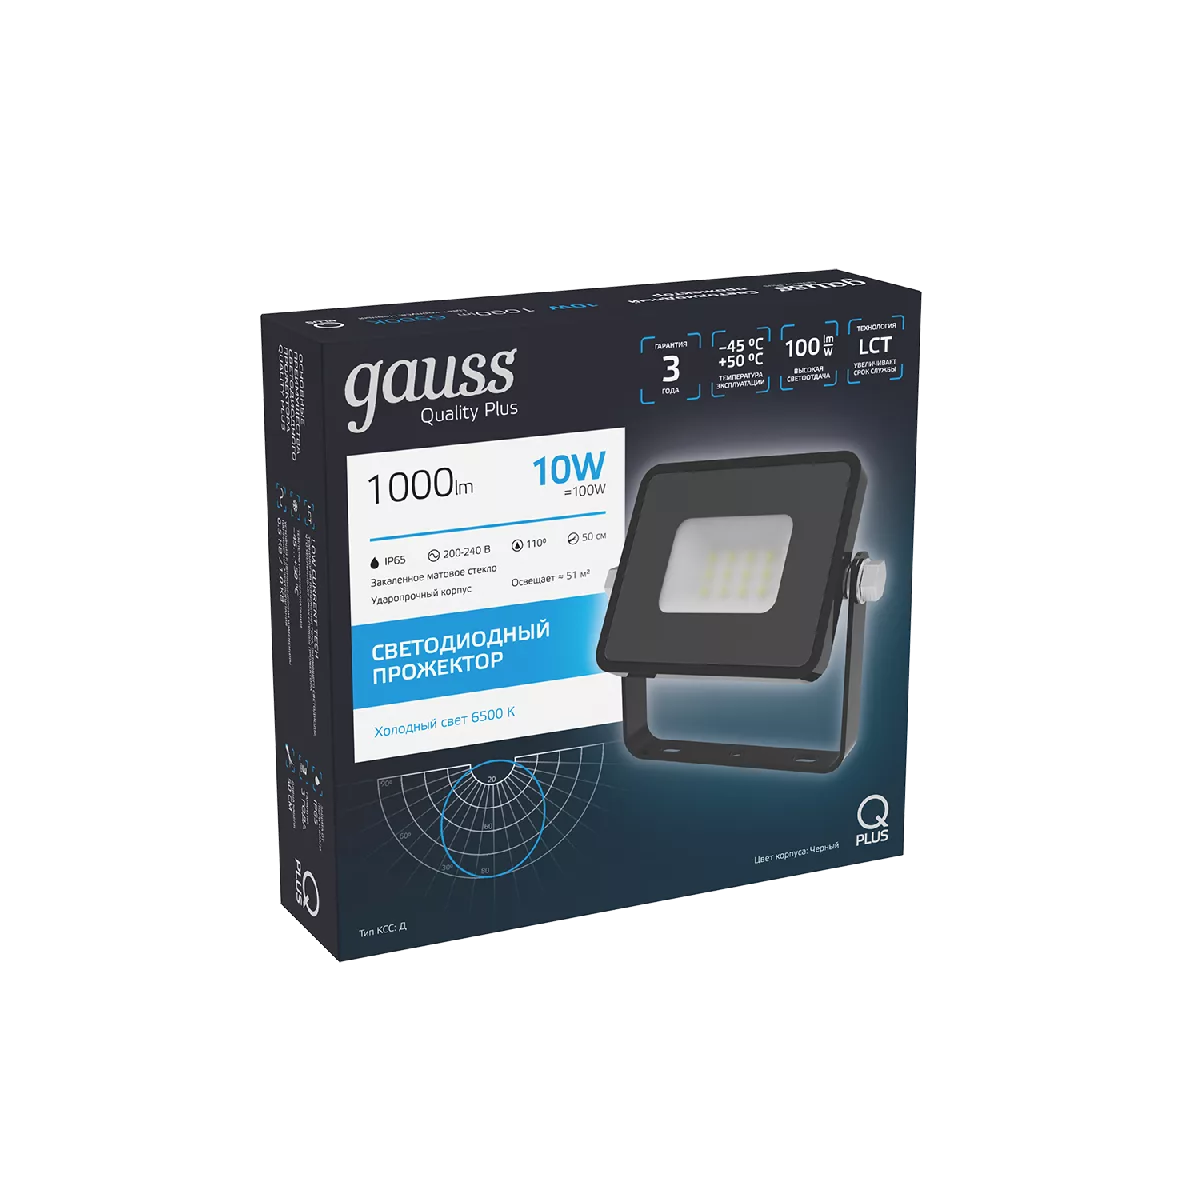 Прожектор Gauss Qplus 10W 1000lm 6500K 200-240V IP65 черный LED 1/20